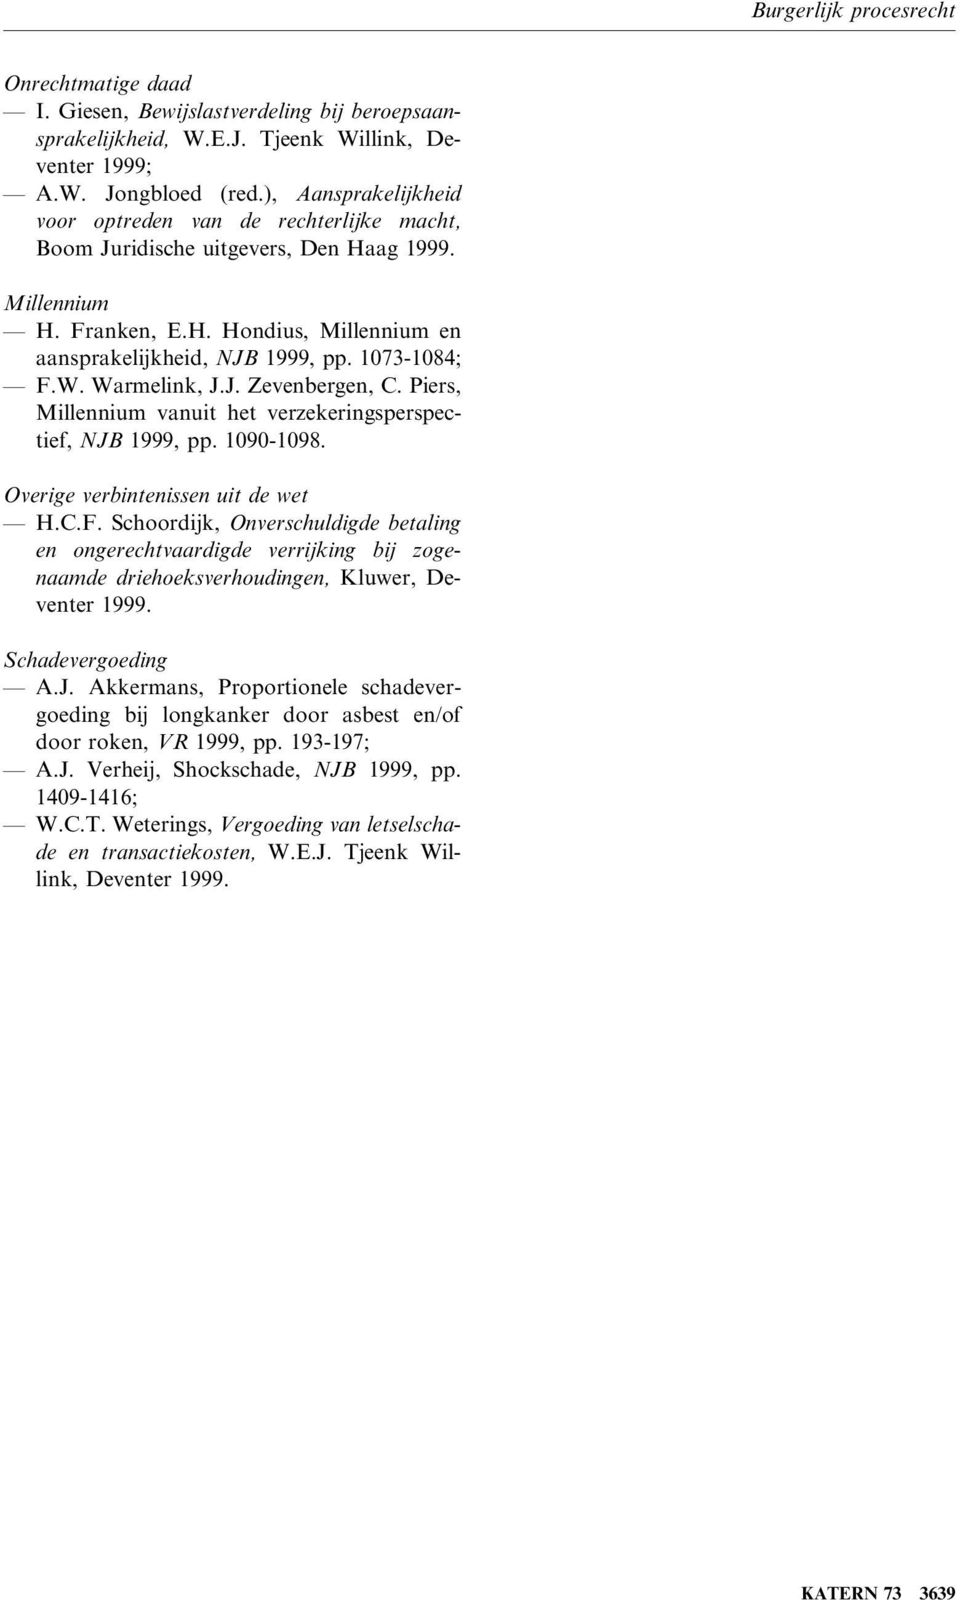 1073-1084; F.W. Warmelink, J.J. Zevenbergen, C. Piers, Millennium vanuit het verzekeringsperspectief, NJB 1999, pp. 1090-1098. Overige verbintenissen uit de wet H.C.F. Schoordijk, Onverschuldigde betaling en ongerechtvaardigde verrijking bij zogenaamde driehoeksverhoudingen, Kluwer, Deventer 1999.